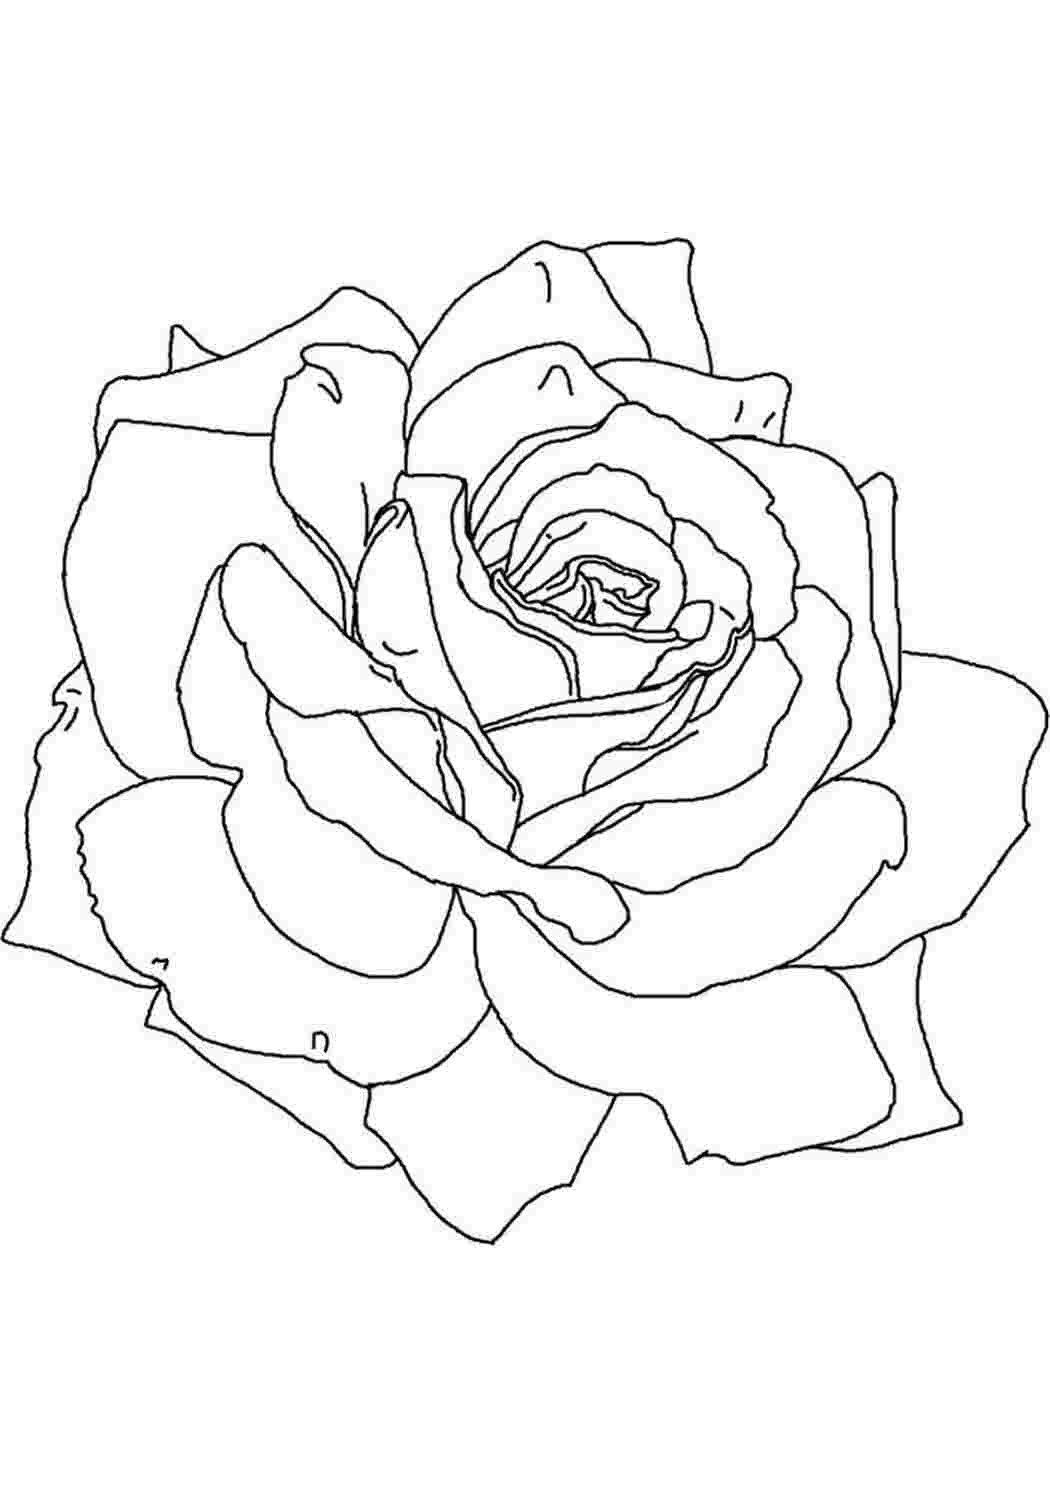 Раскраски Крупная Роза. Обучающие раскраски. Крупная Роза. Распечатать раскраски на сайте.